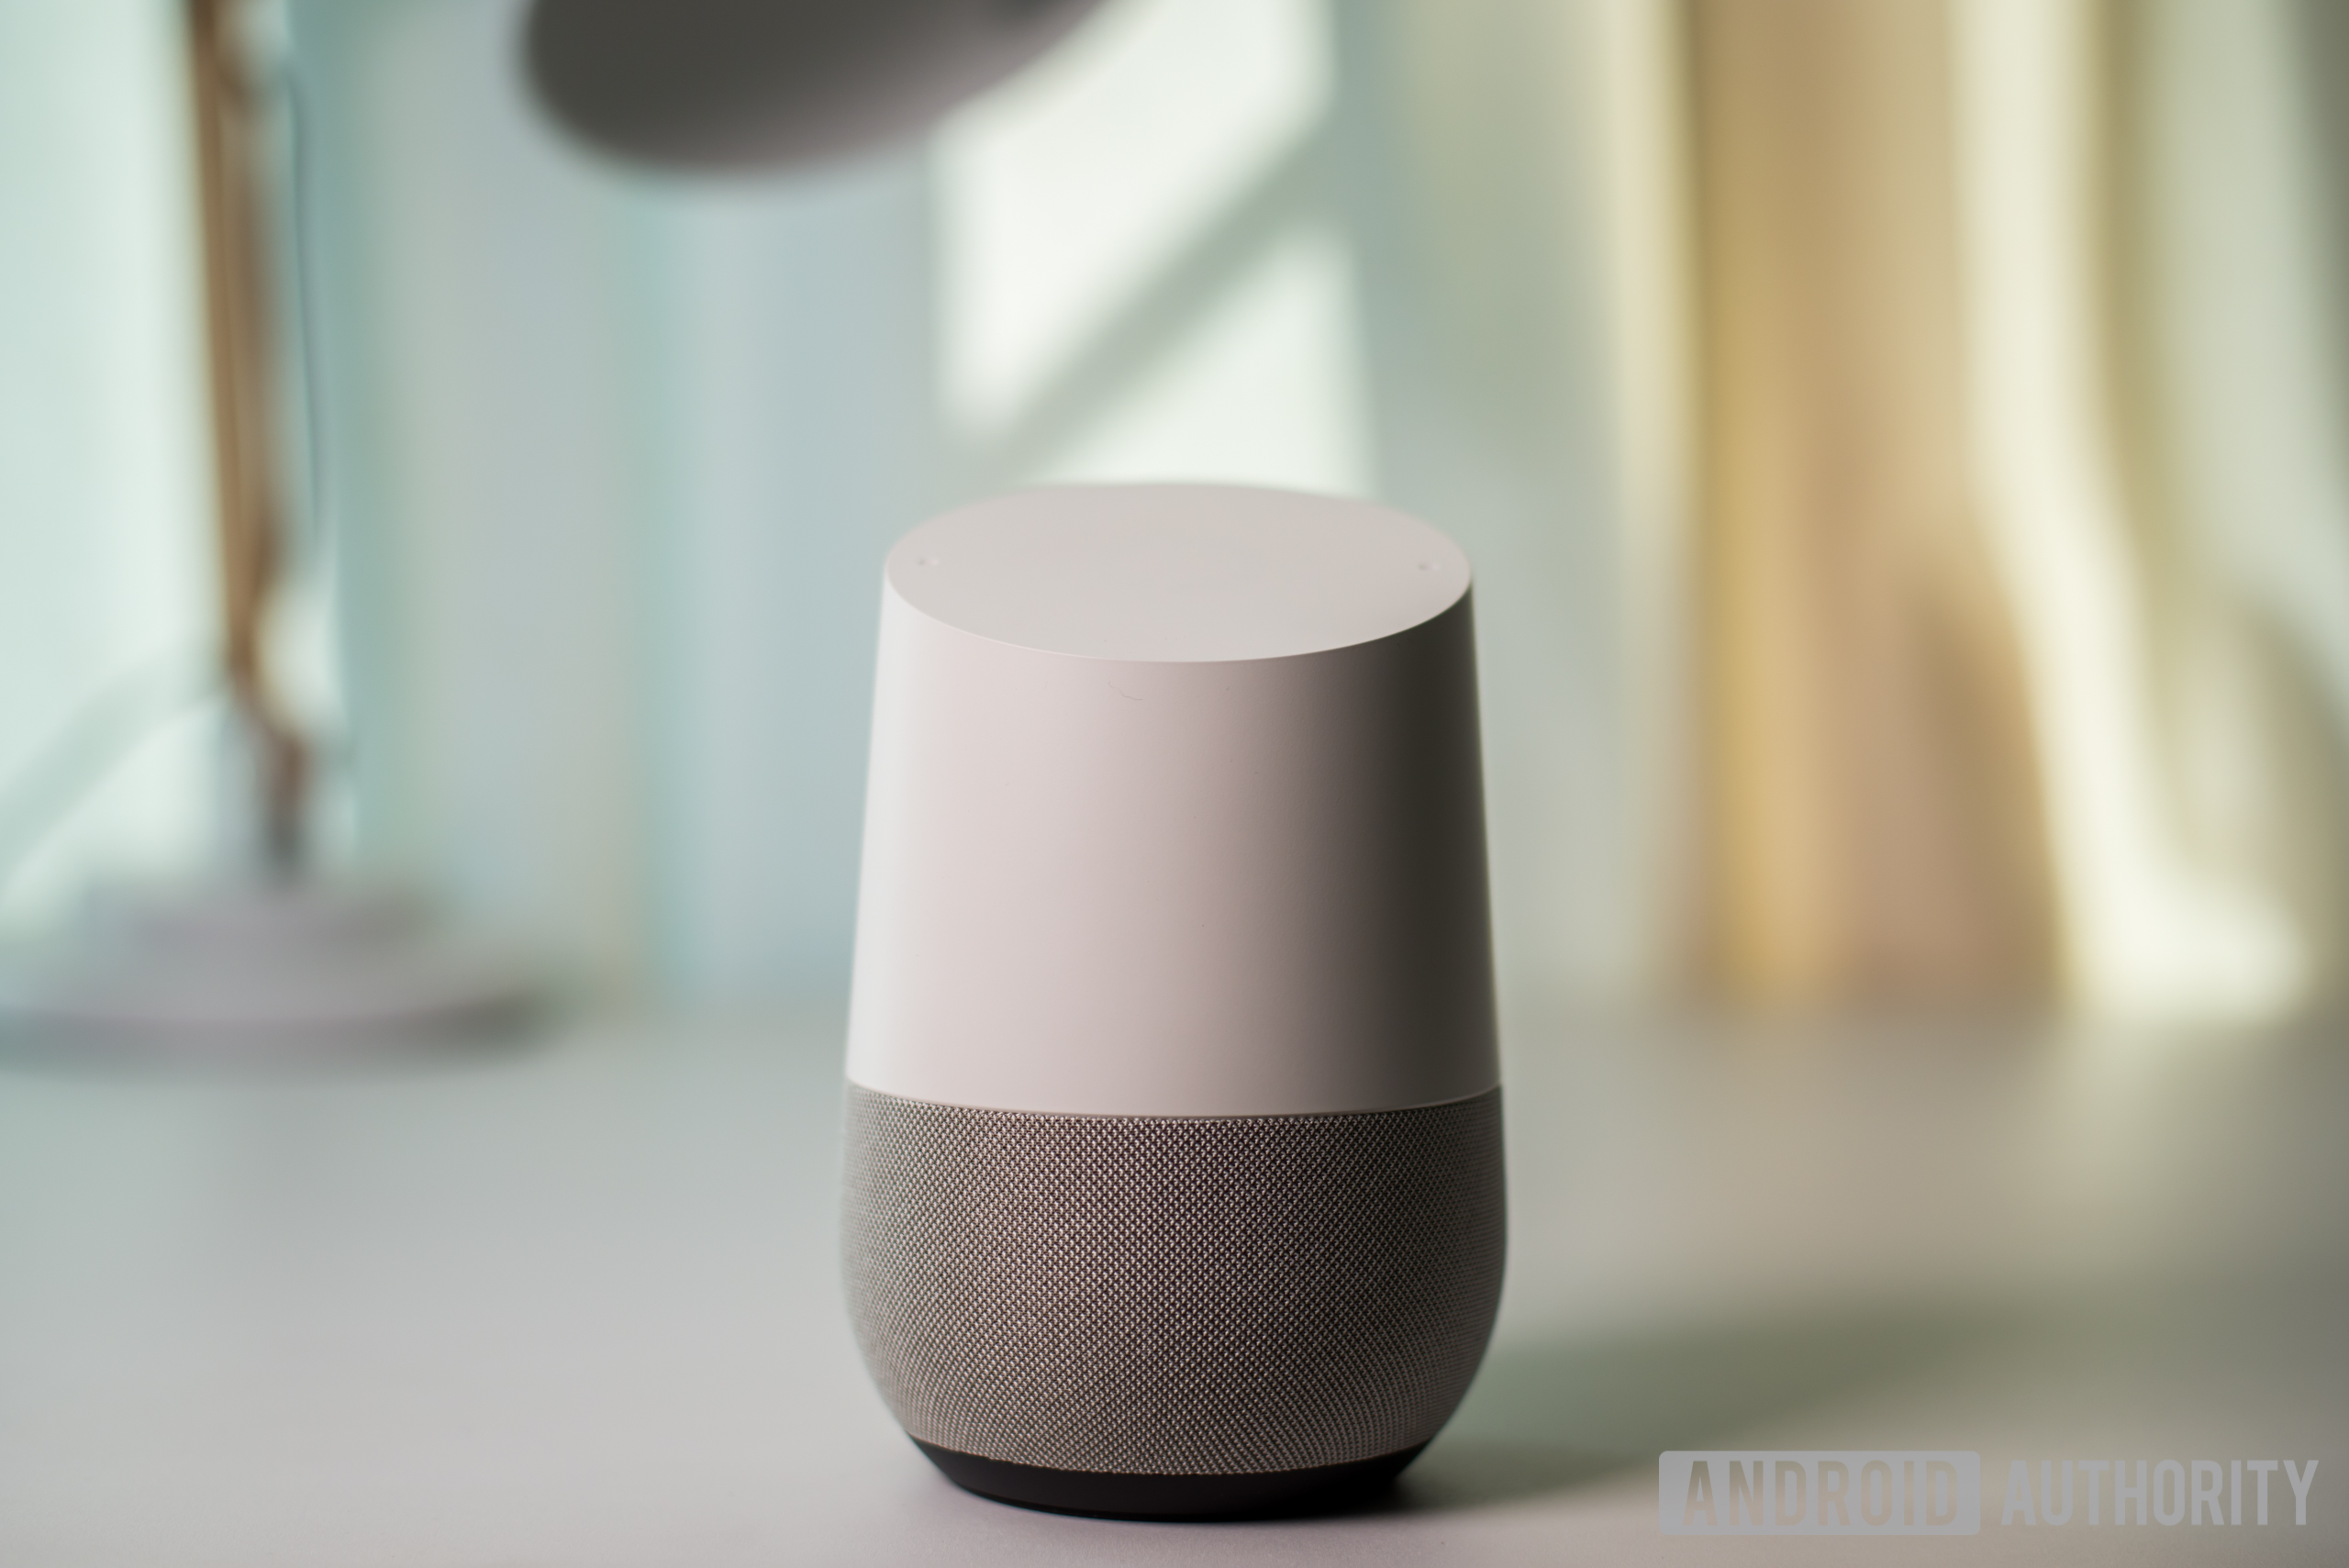 The Google Home smart speaker